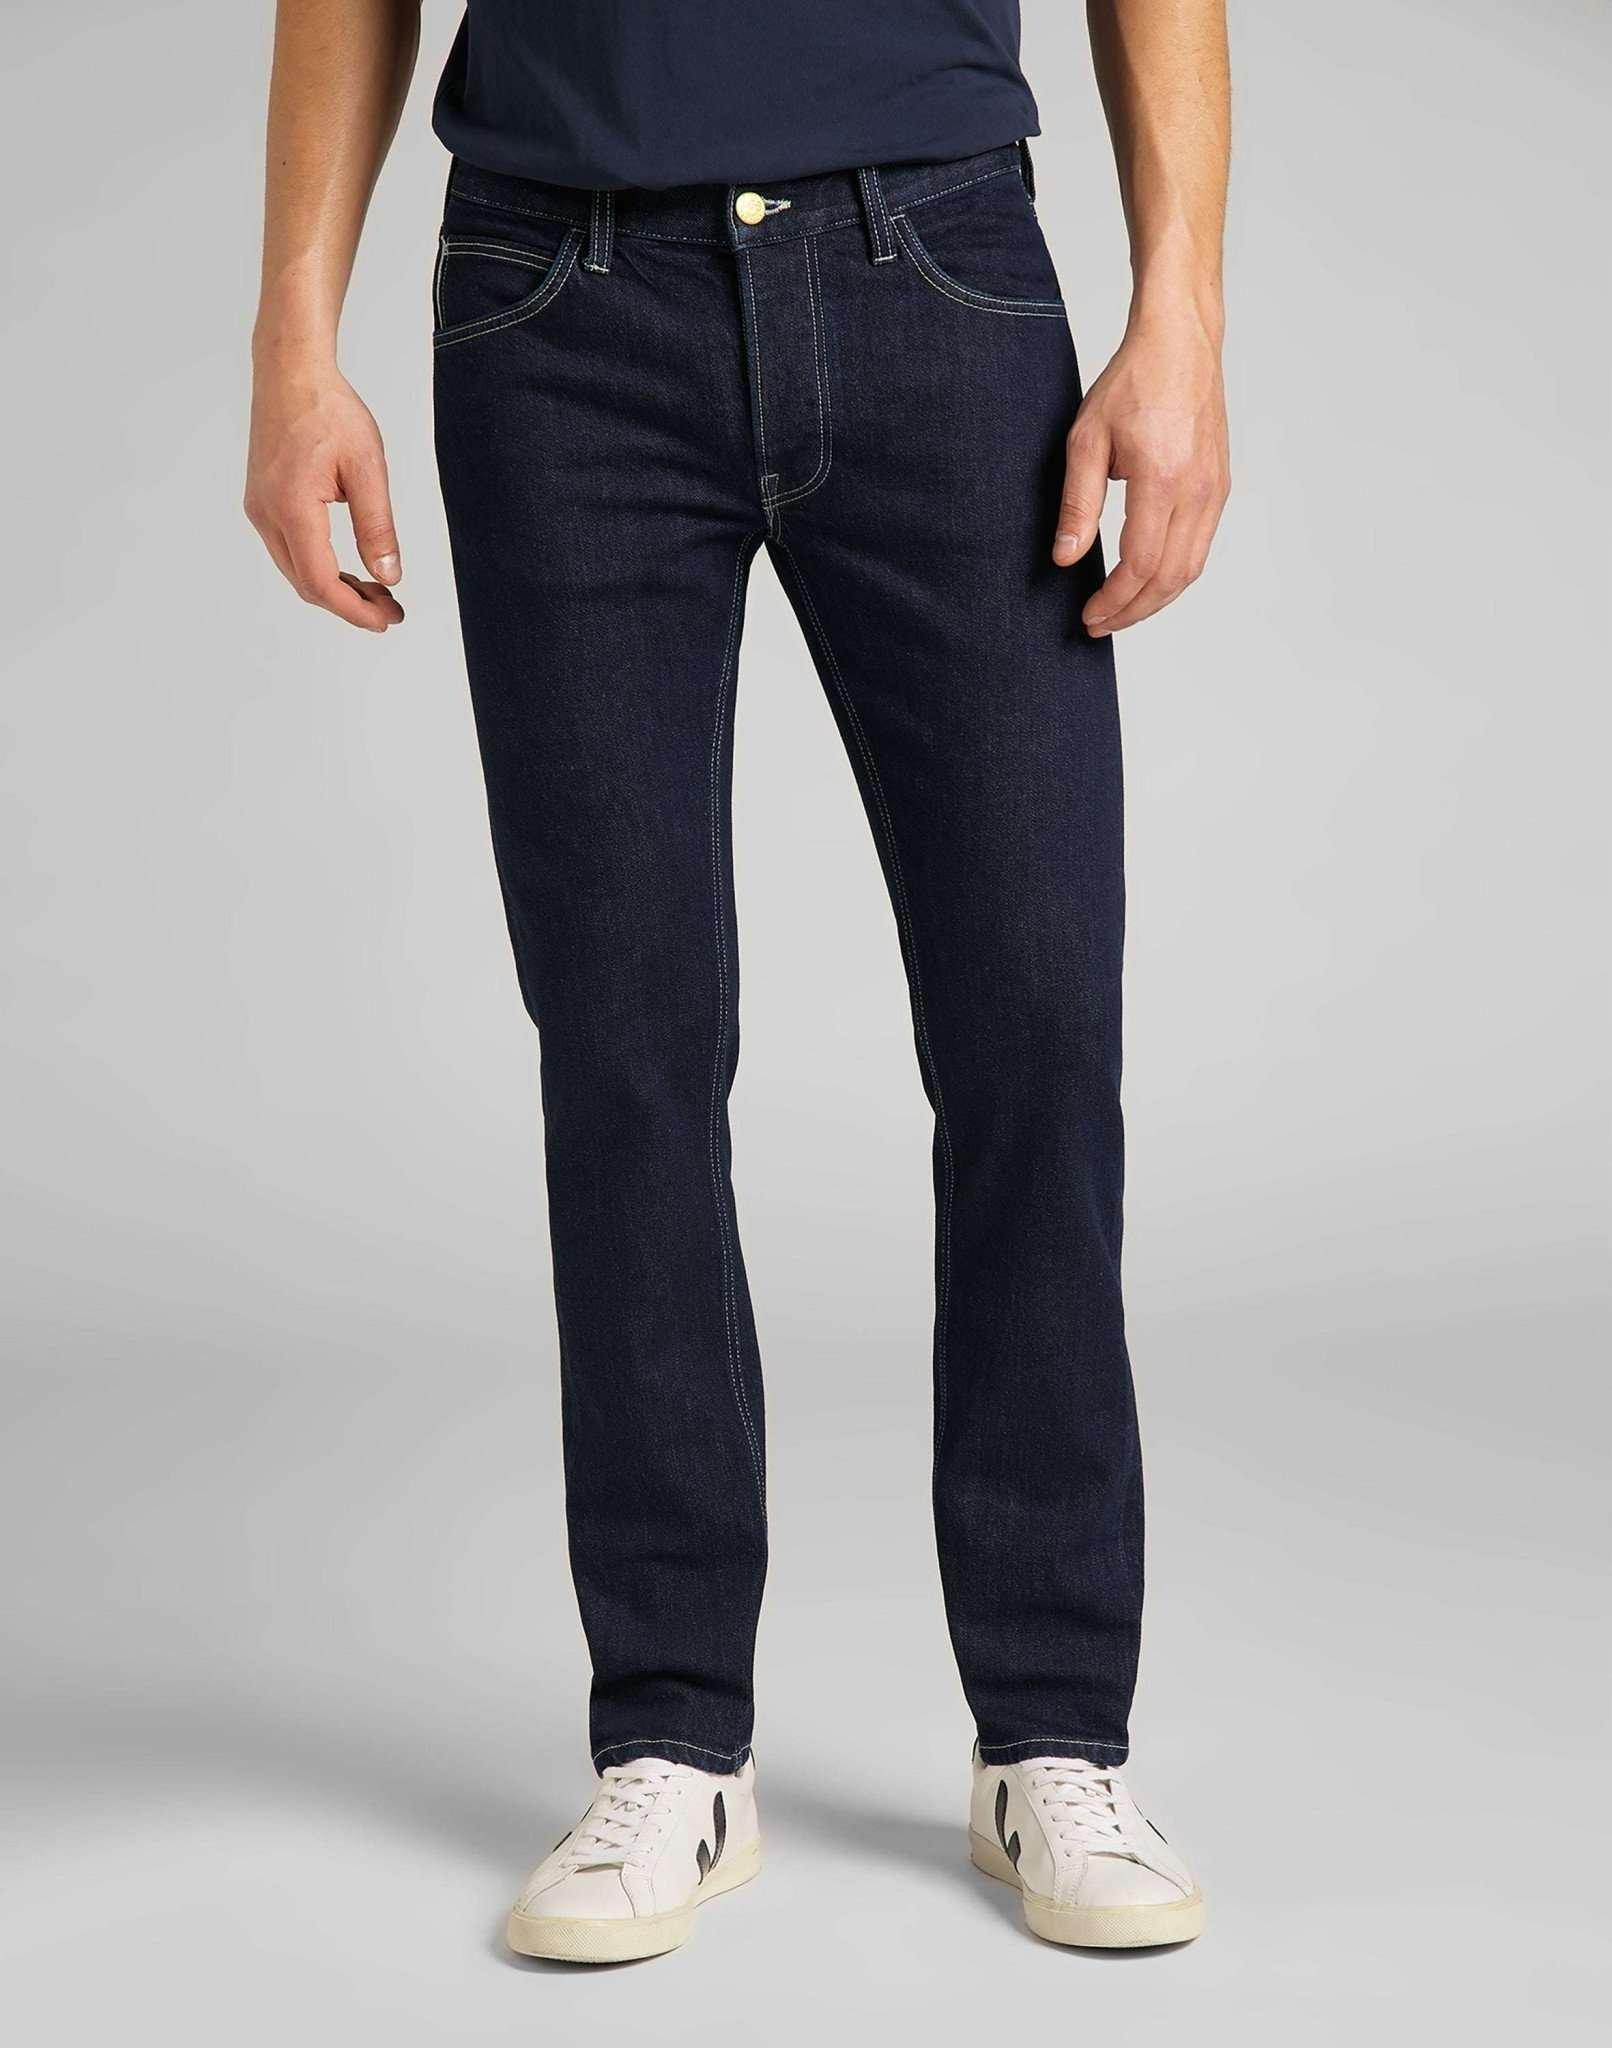 Jeans Slim Fit Luke Herren Blau Denim L32/W36 von Lee